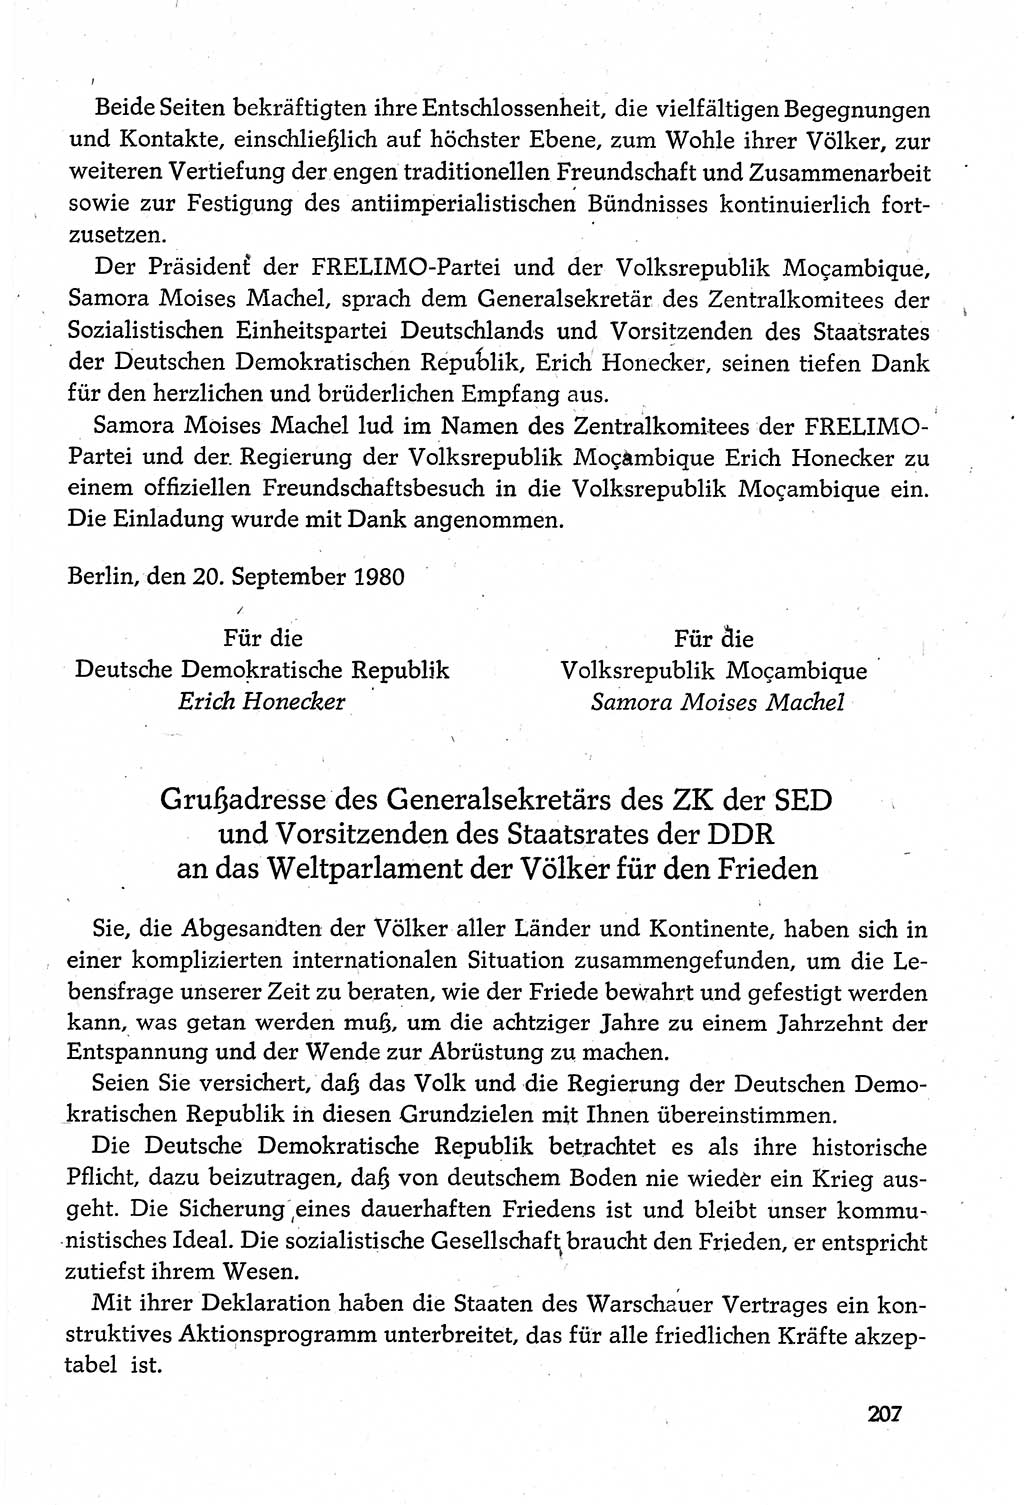 Dokumente der Sozialistischen Einheitspartei Deutschlands (SED) [Deutsche Demokratische Republik (DDR)] 1980-1981, Seite 207 (Dok. SED DDR 1980-1981, S. 207)